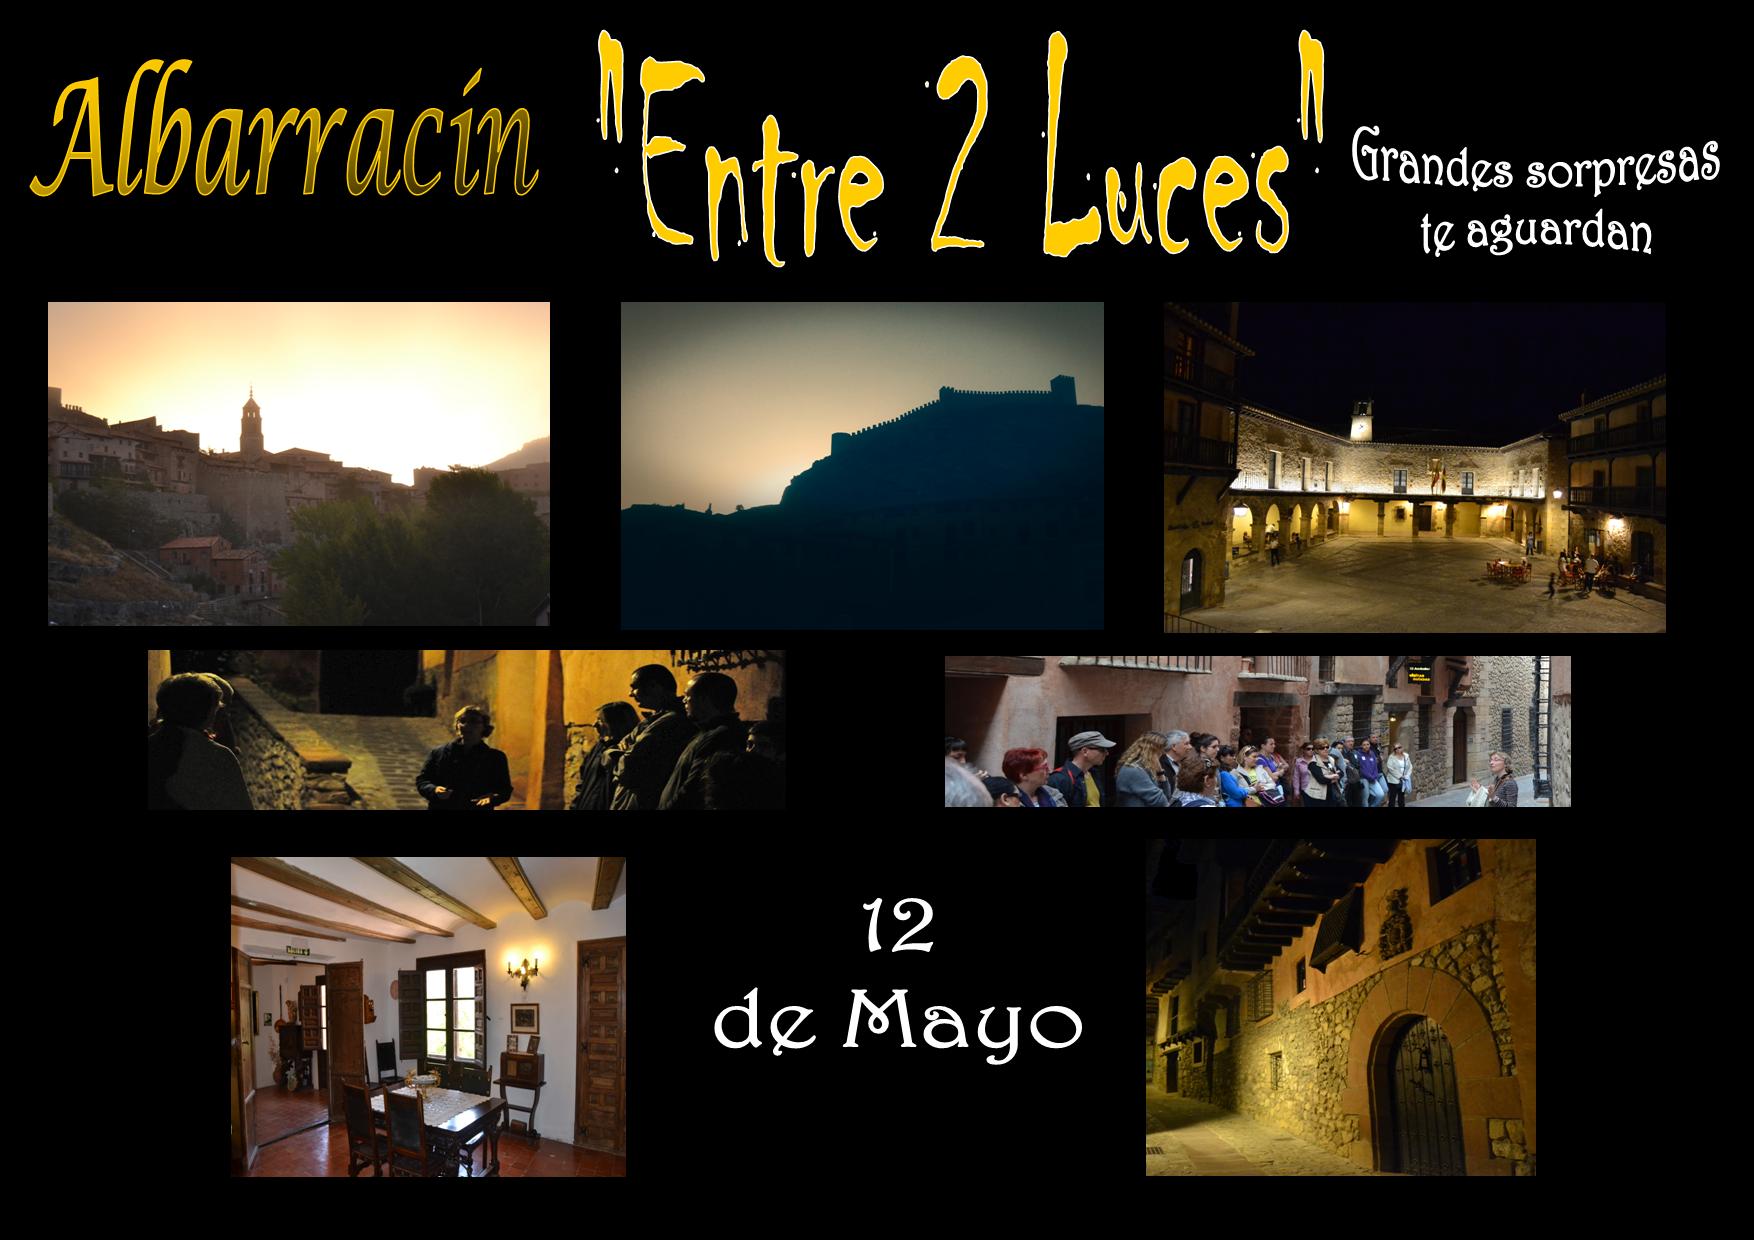 Este SÁBADO 12 de Mayo… Albarracín «Entre 2 Luces»